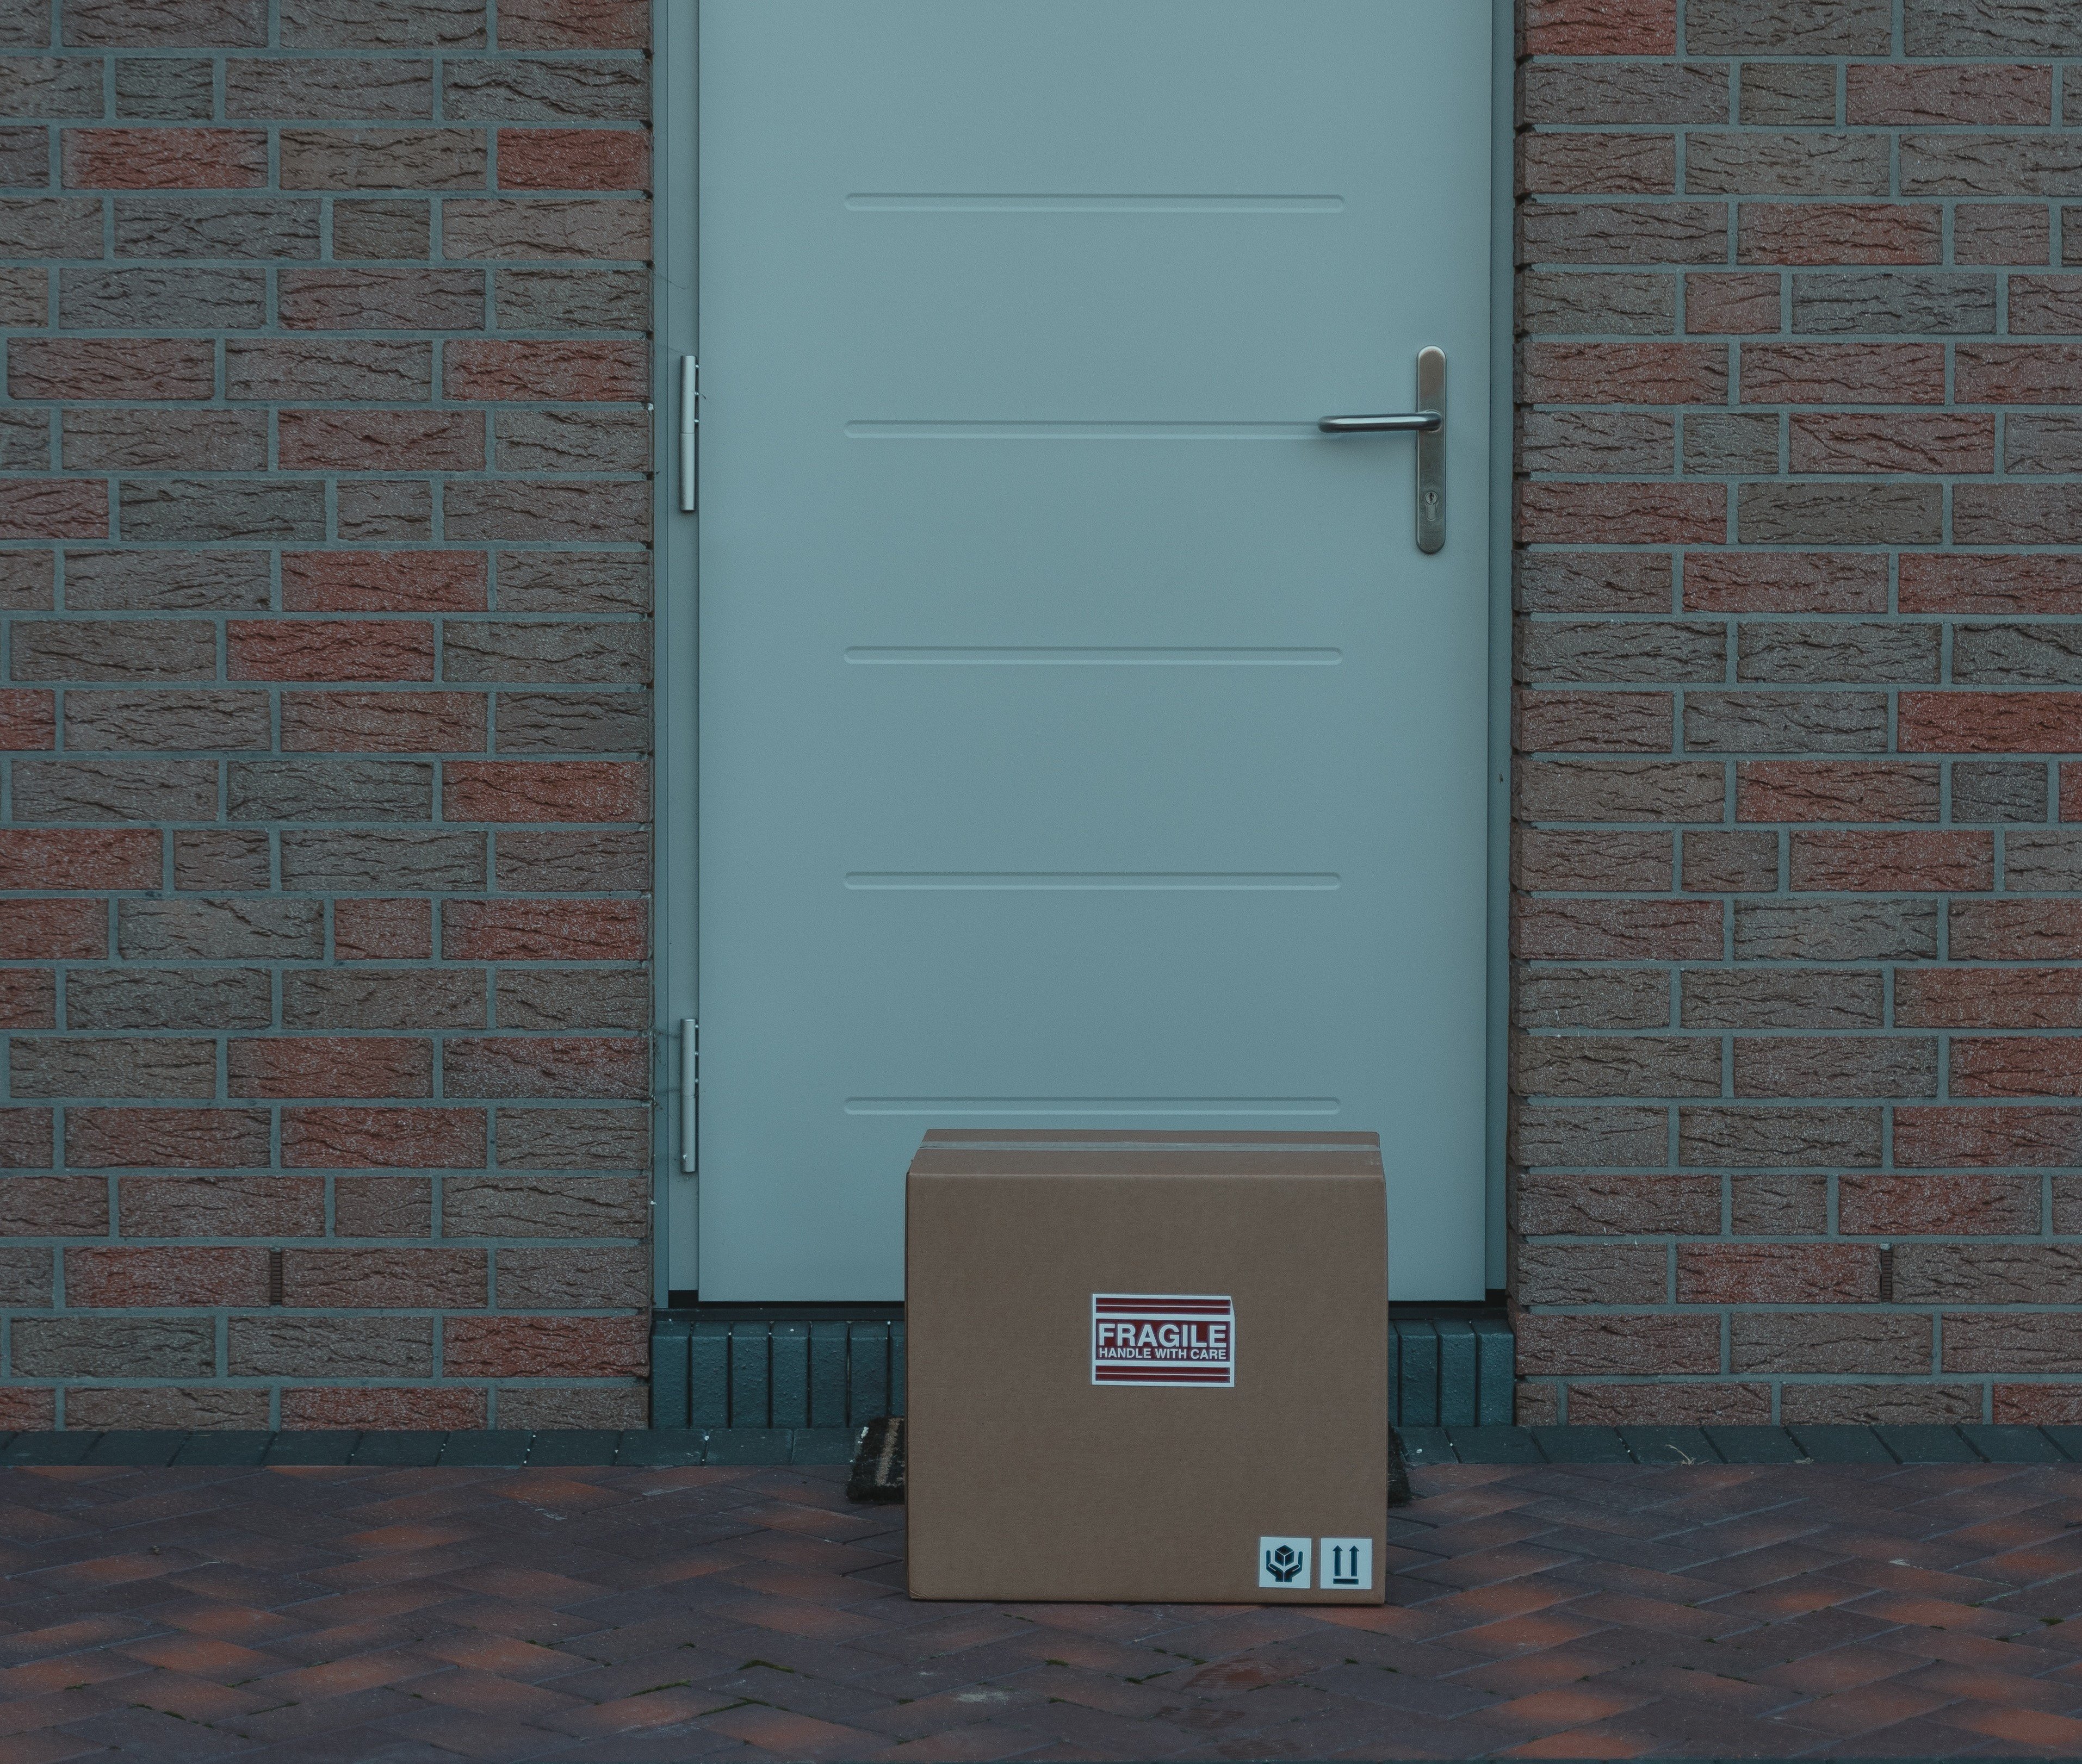 Eines Abends fand Dylan einen mysteriösen Karton vor seiner Haustür. | Quelle: Pexels